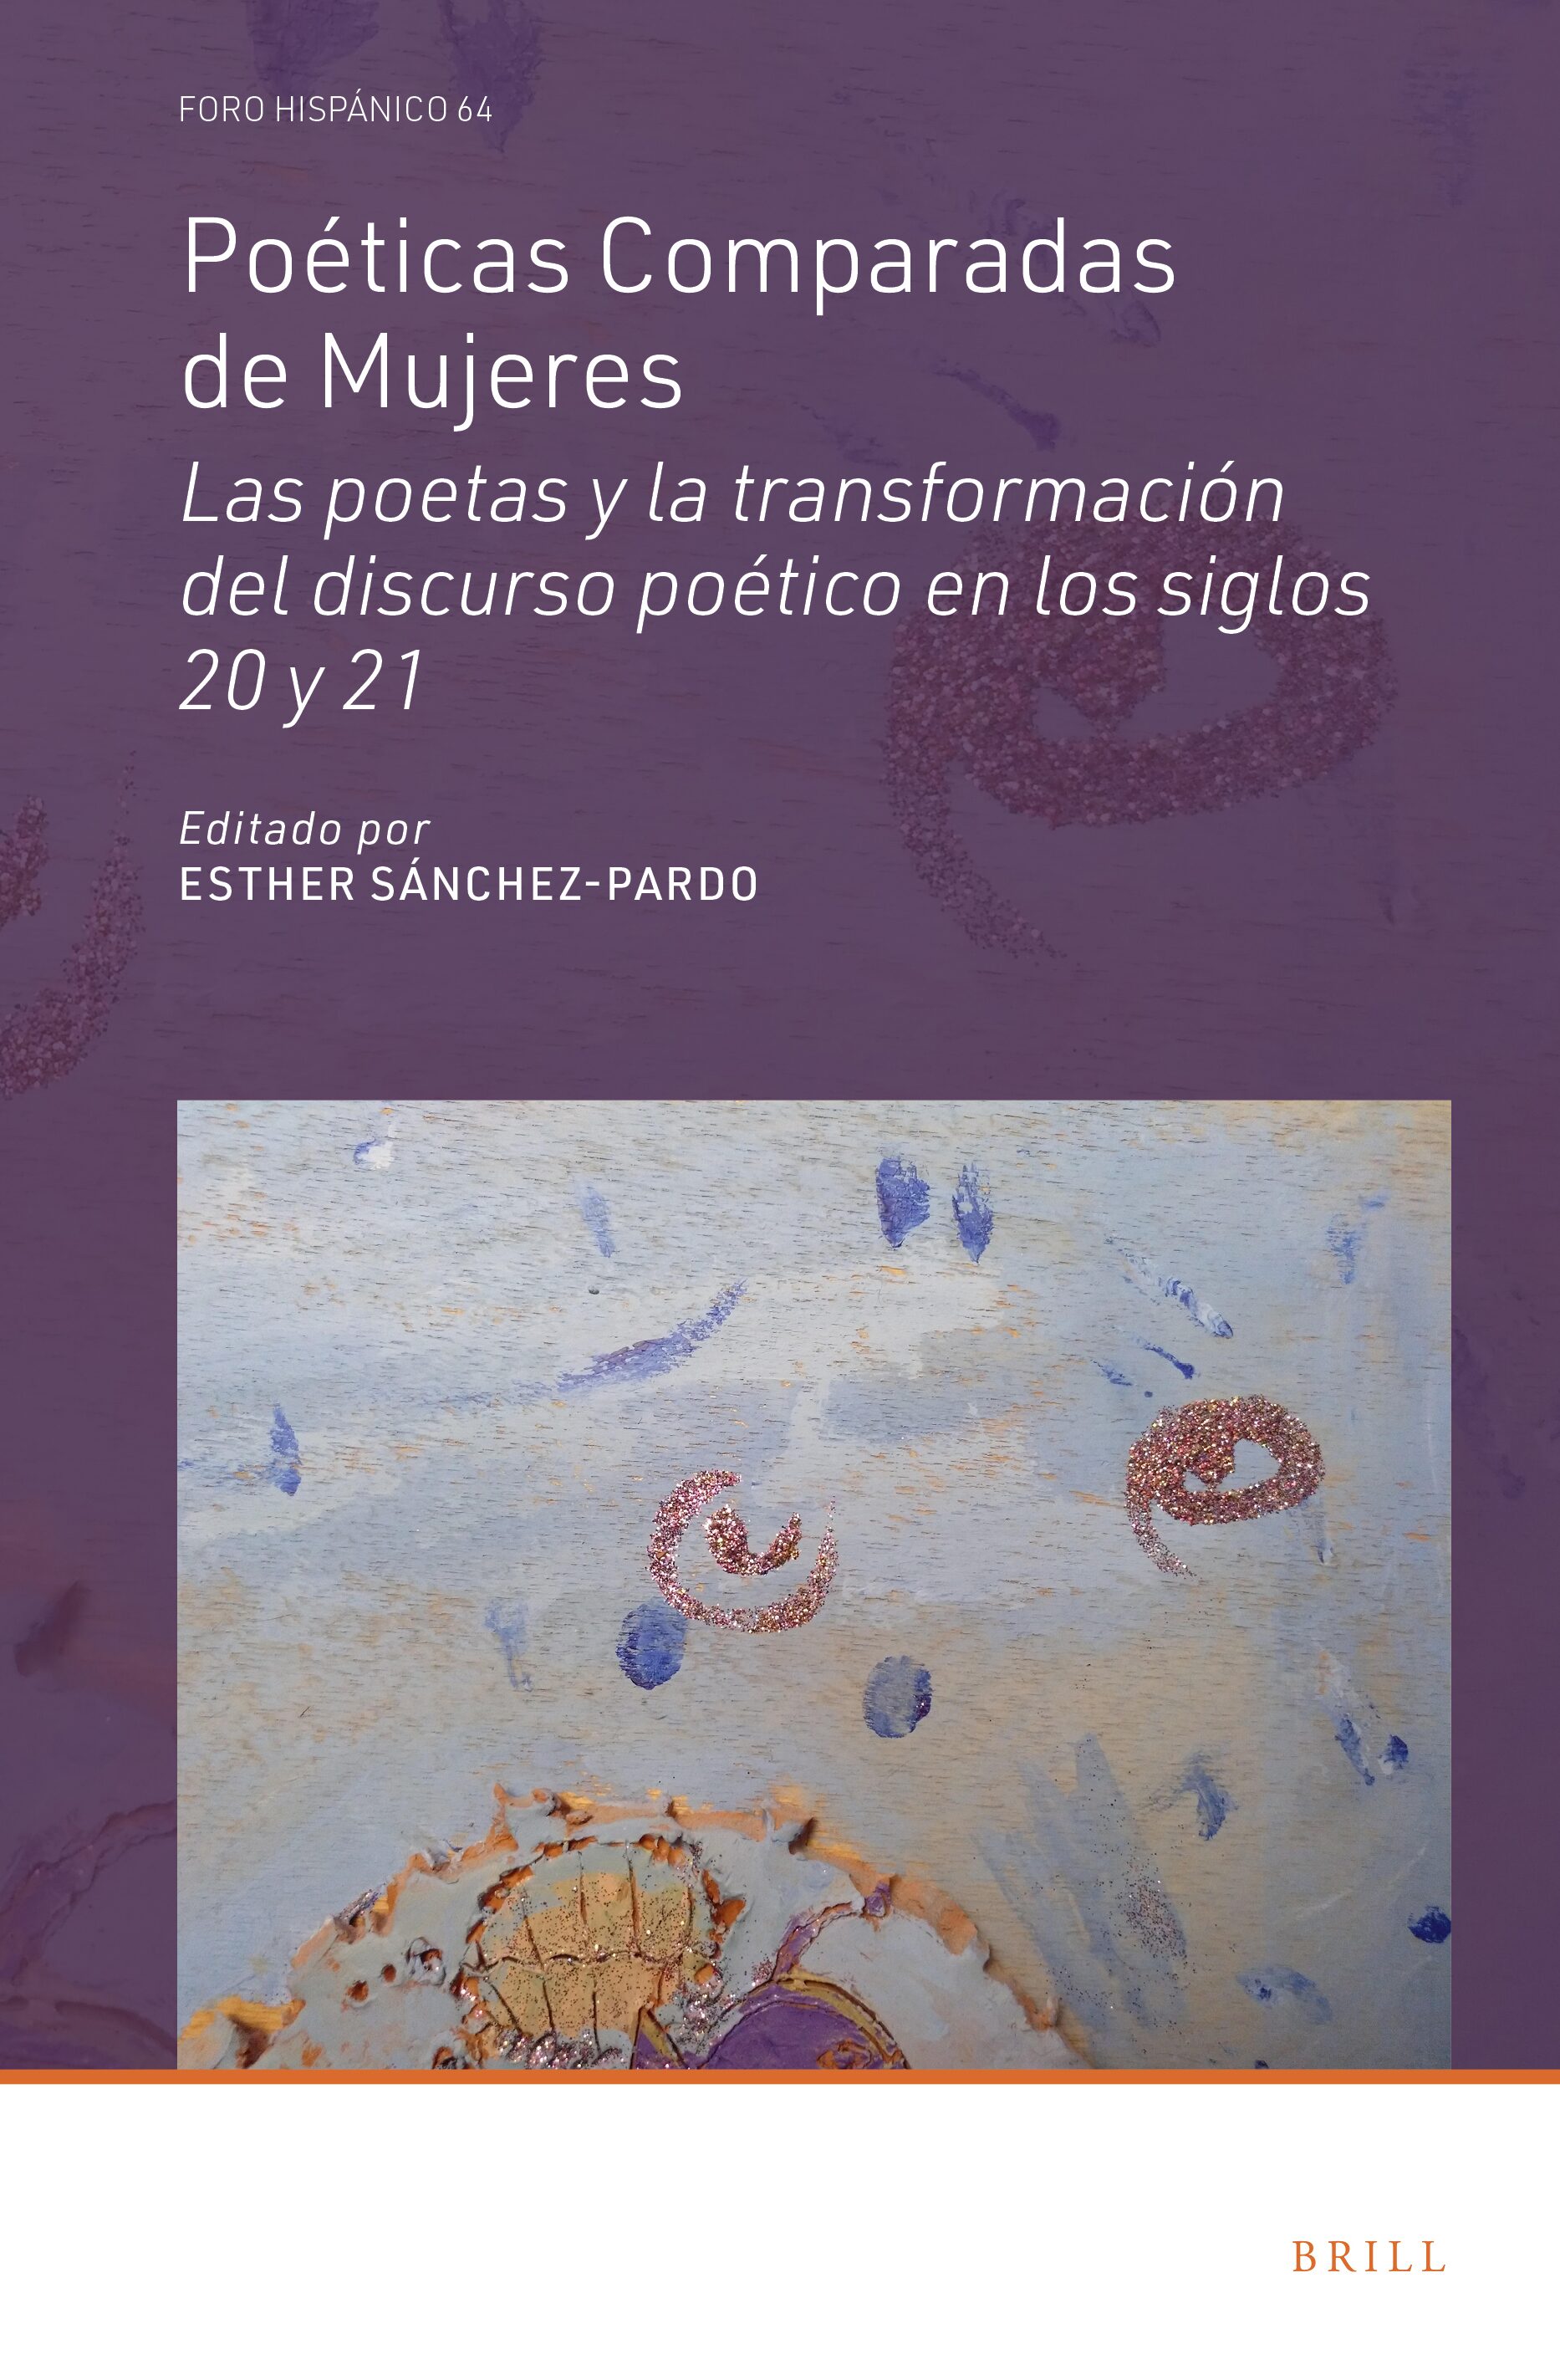 Imagen de portada del libro Poéticas comparadas de mujeres